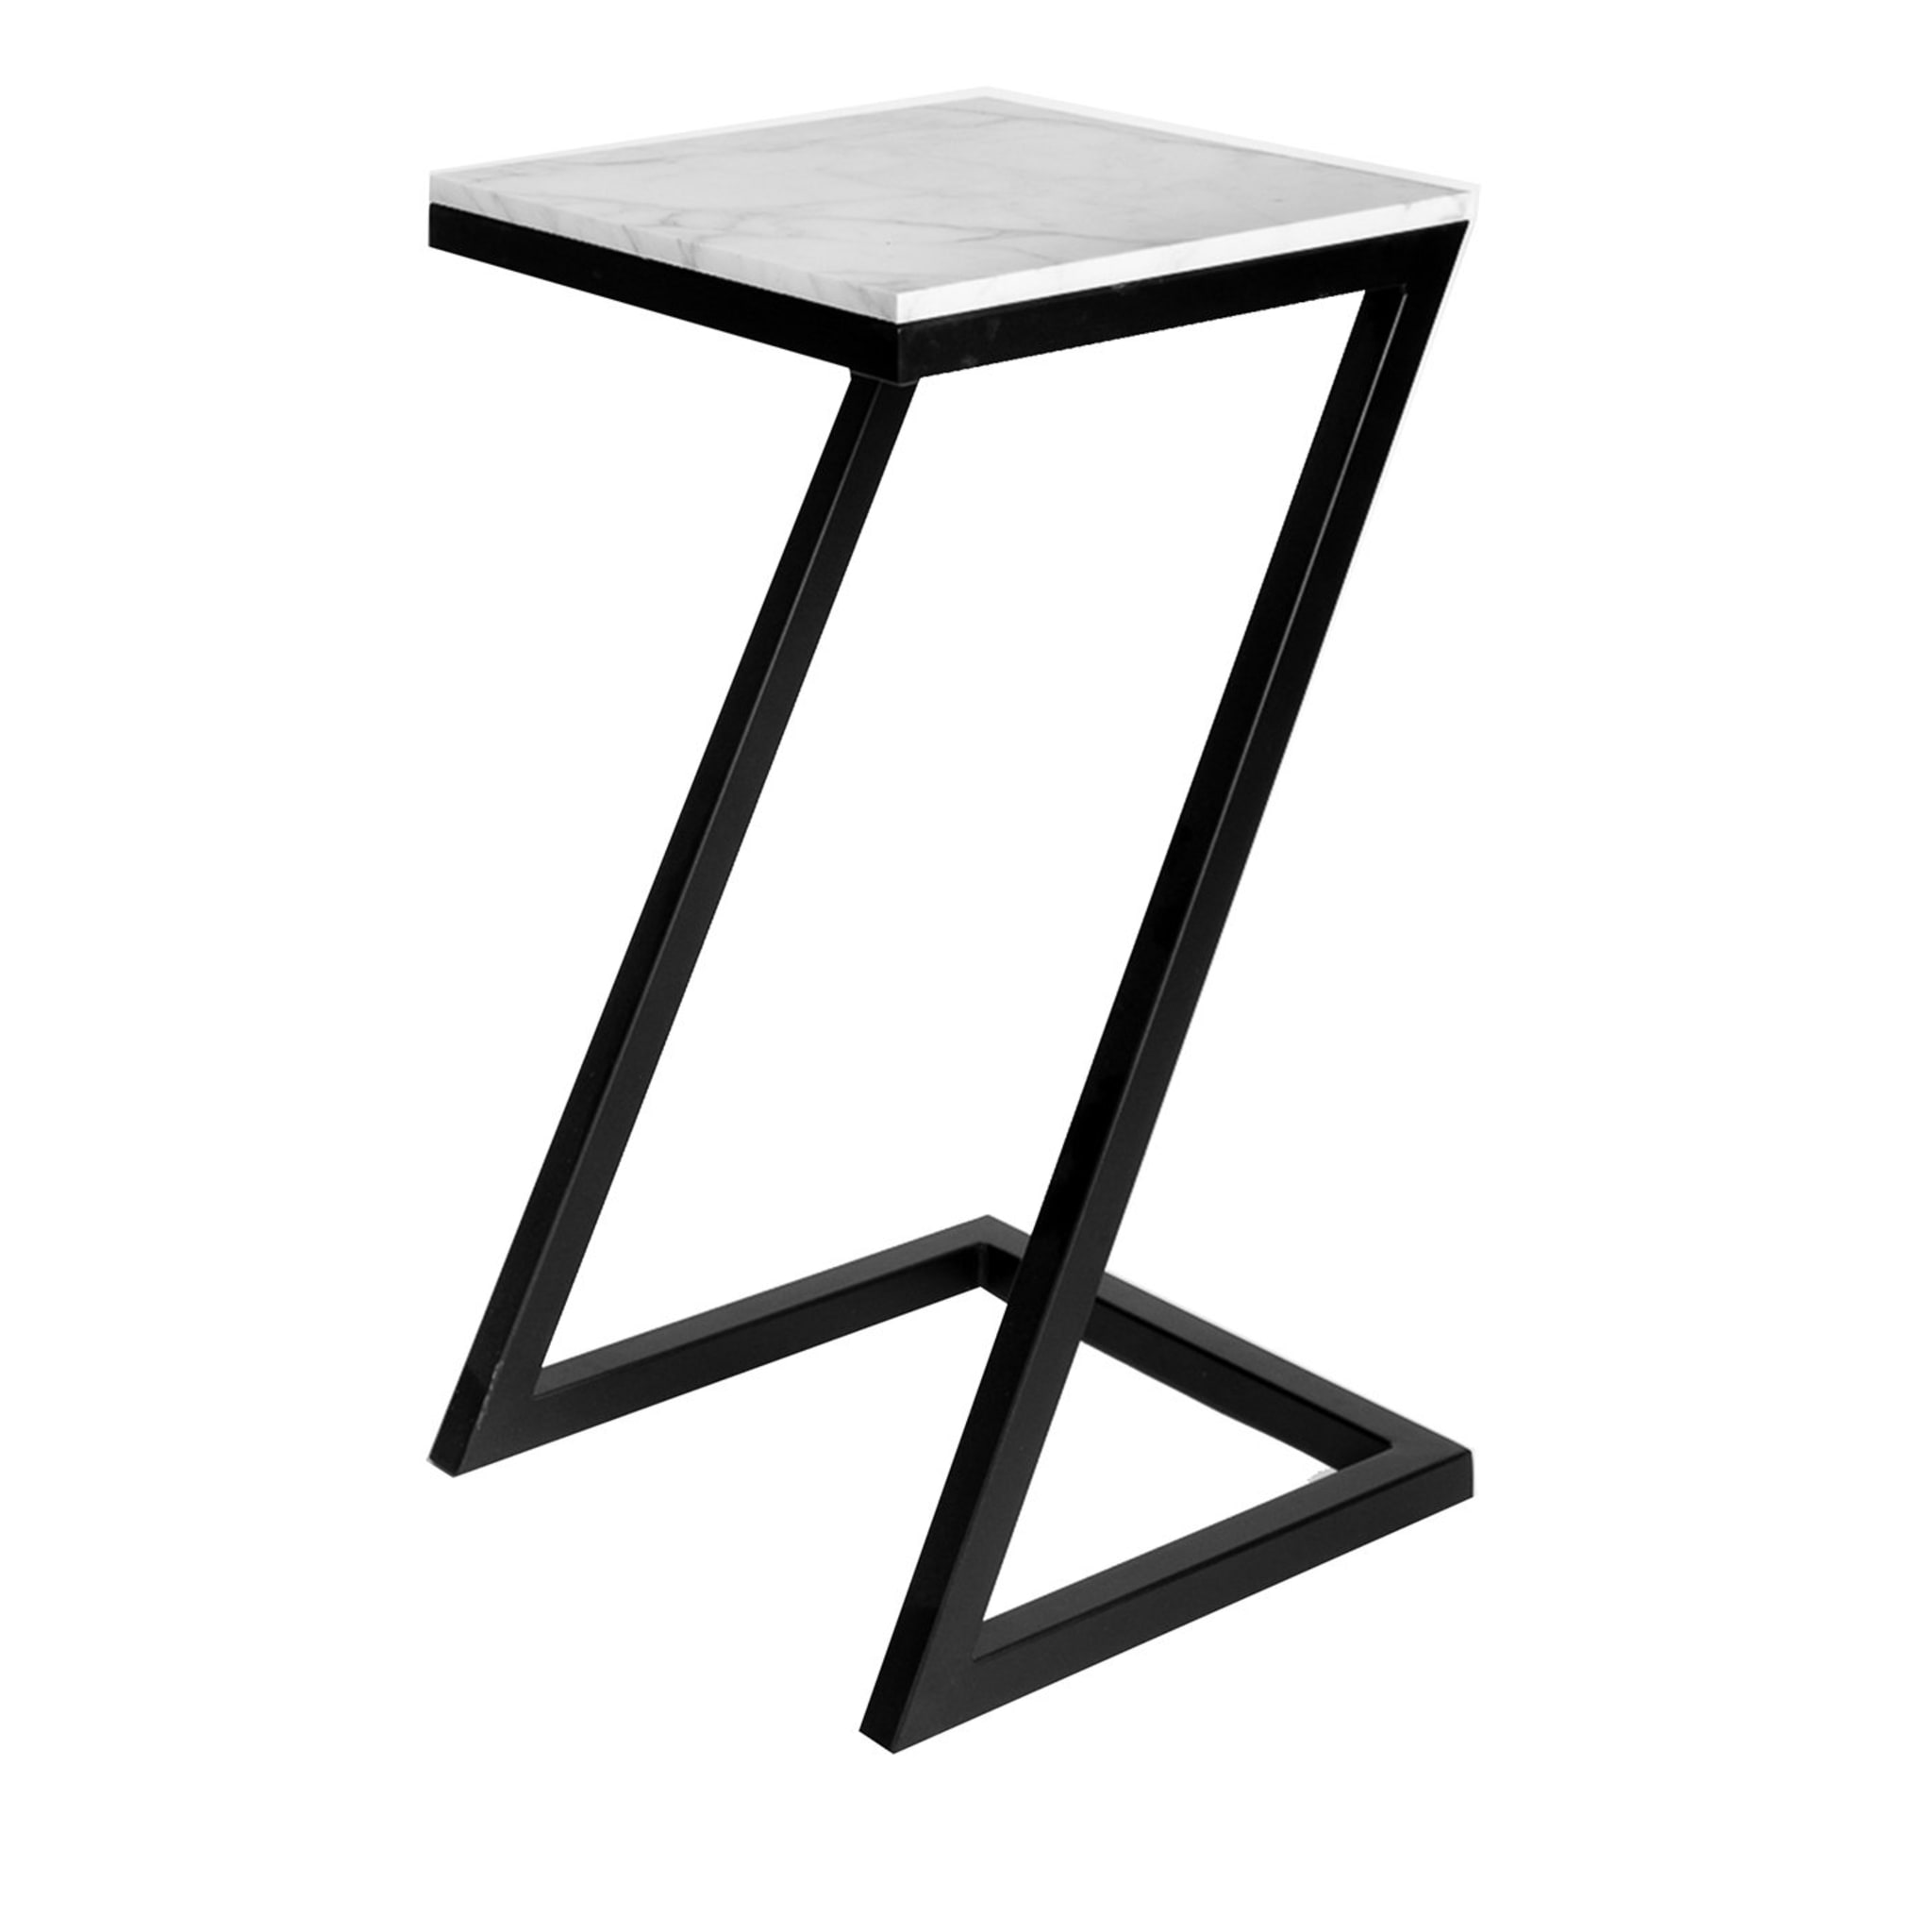 Zante White Carrara Side Table - Alternative view 1